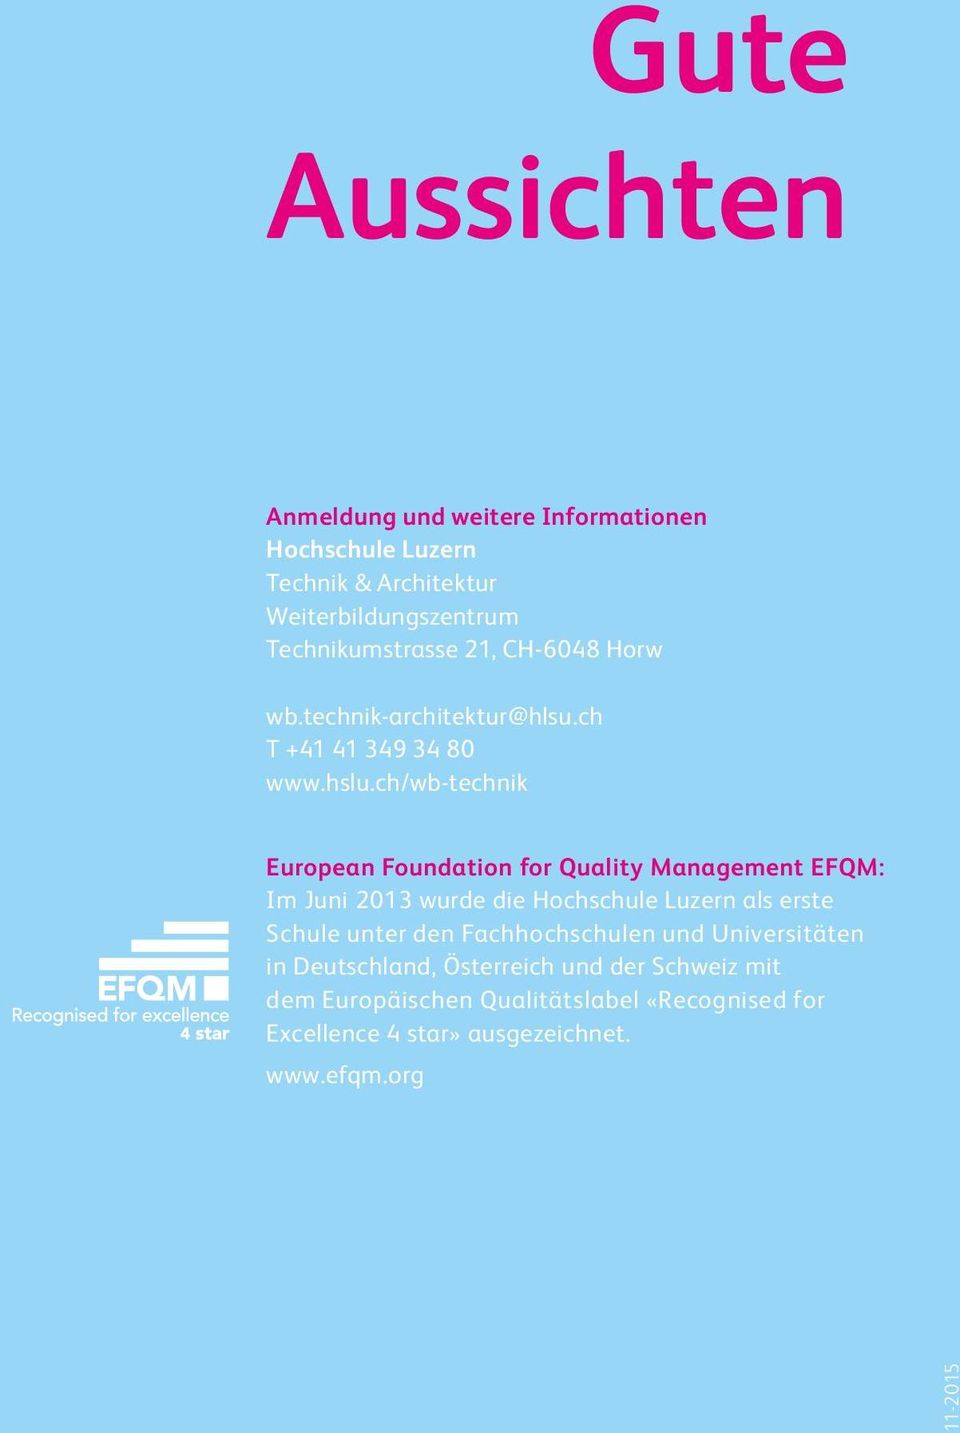 ch/wb-technik European Foundation for Quality Management EFQM: Im Juni 2013 wurde die Hochschule Luzern als erste Schule unter den